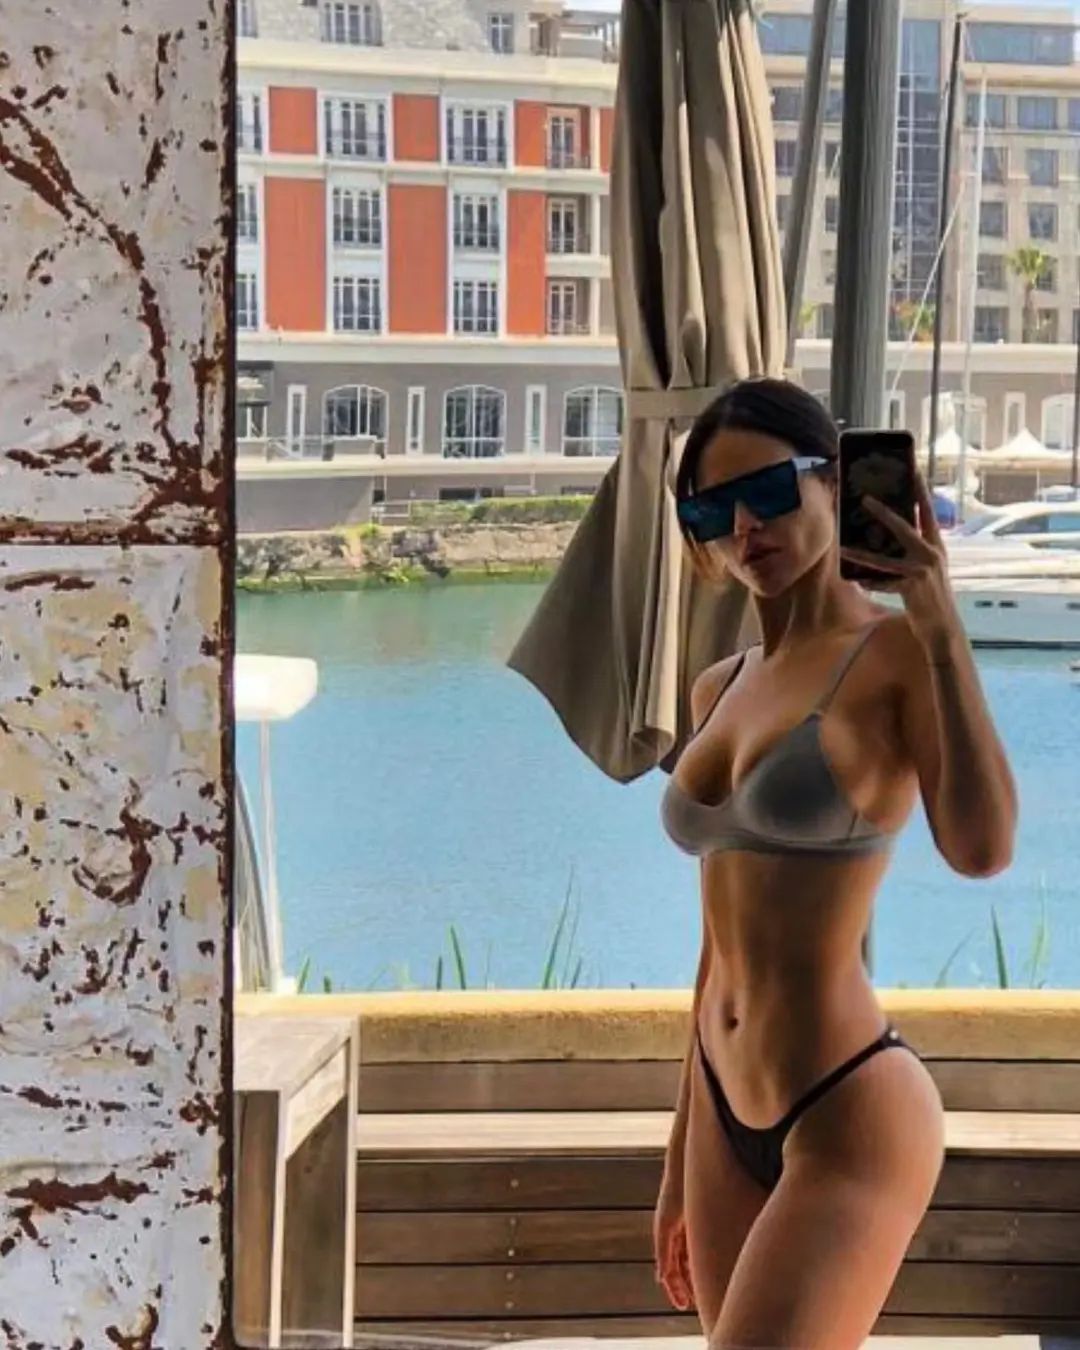 Photos n°3 : Eiza Gonzalez Shows Off Her Bikini Body in New Selfie!